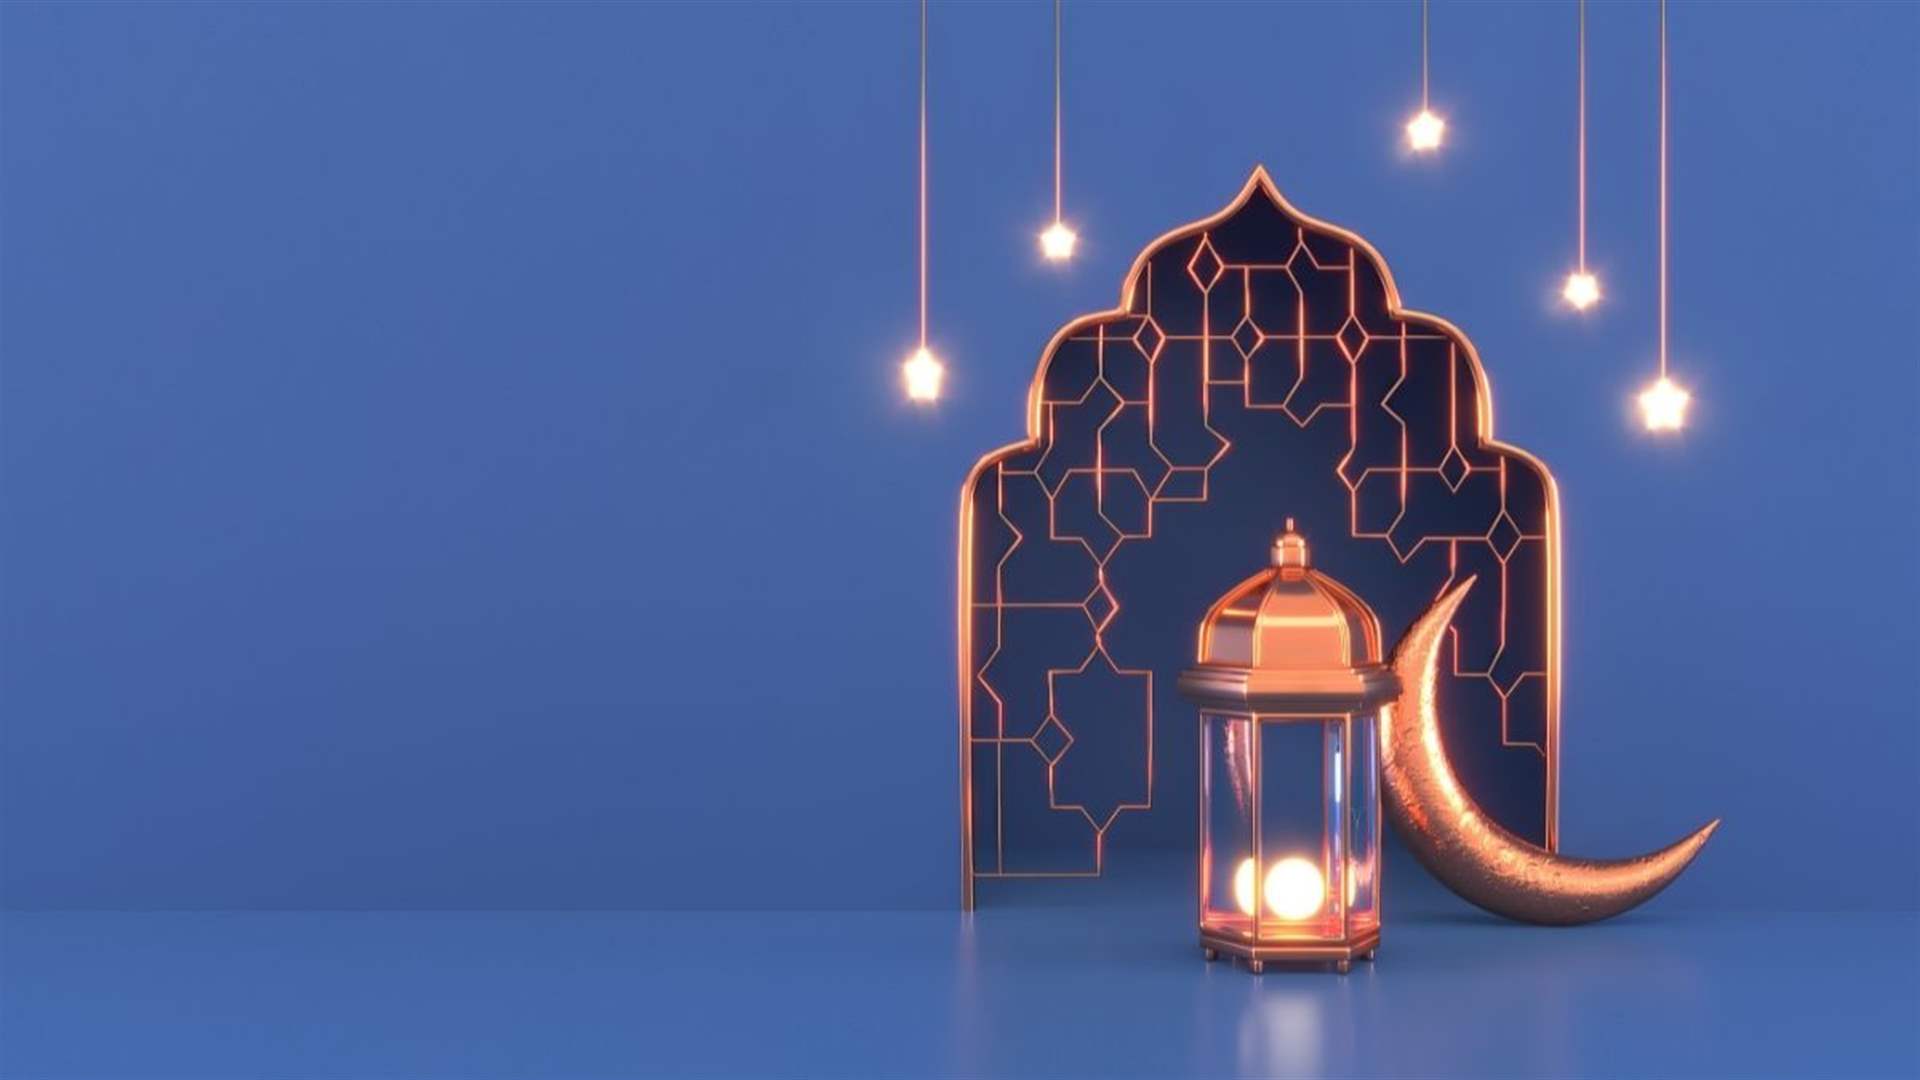 المكتب الشرعي لفضل الله: الاثنين ١١ آذار اول ايام شهر رمضان المبارك